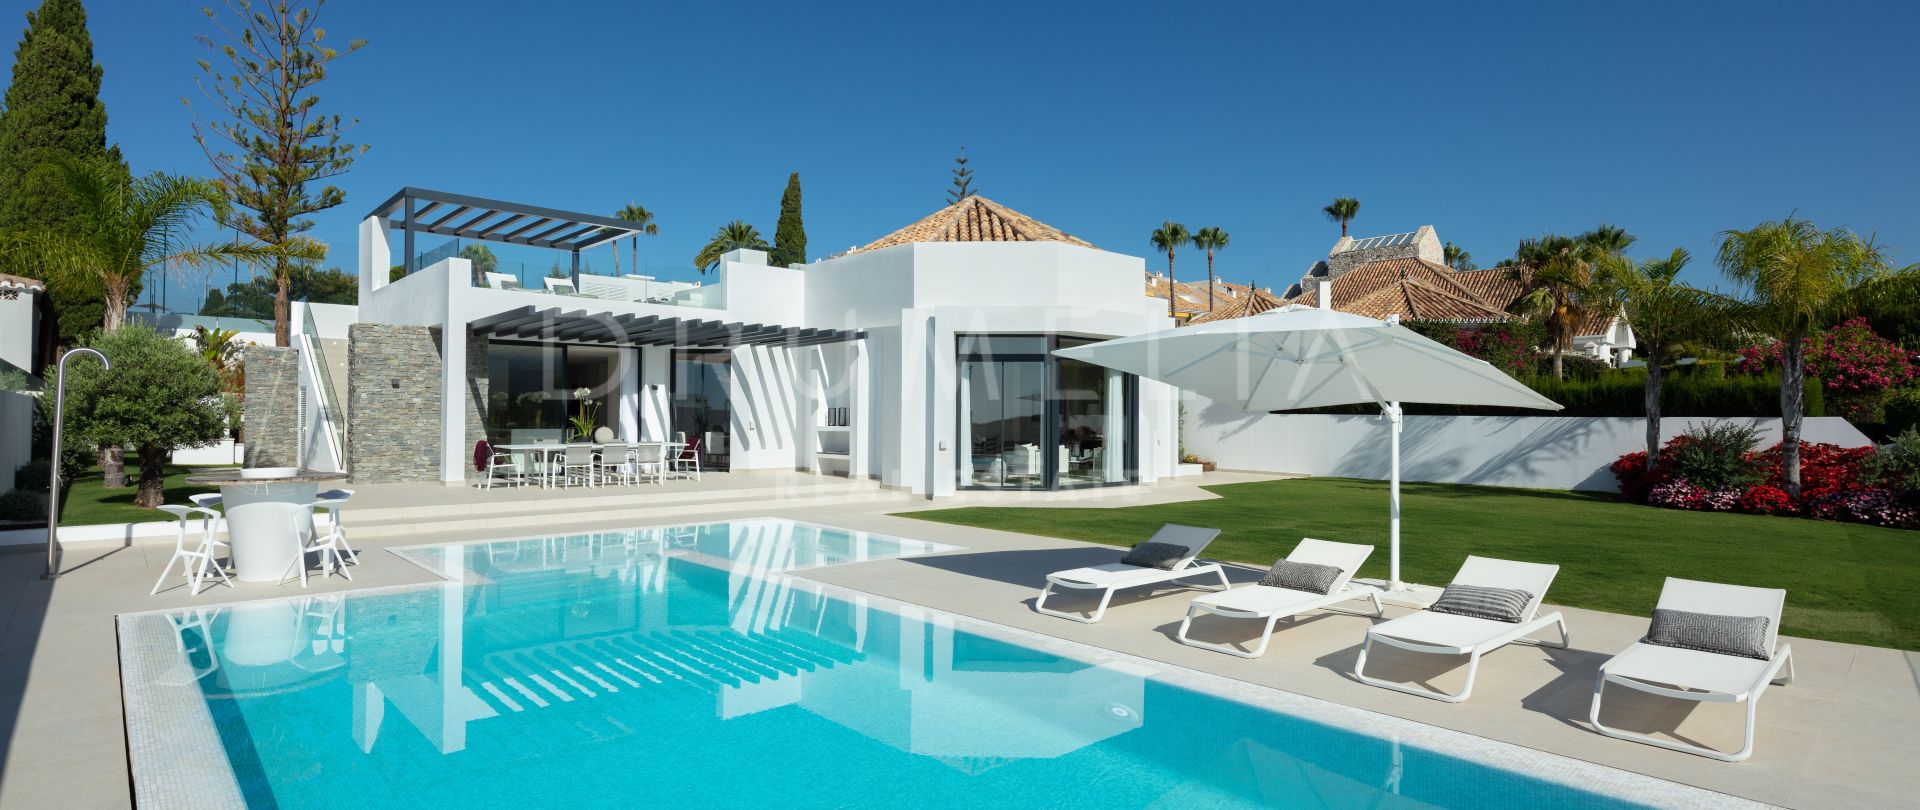 Villa Elia - Hypermoderne, front-line golf moderne luxe villa, Aloha Golf Club, Nueva Andalucía, Marbella